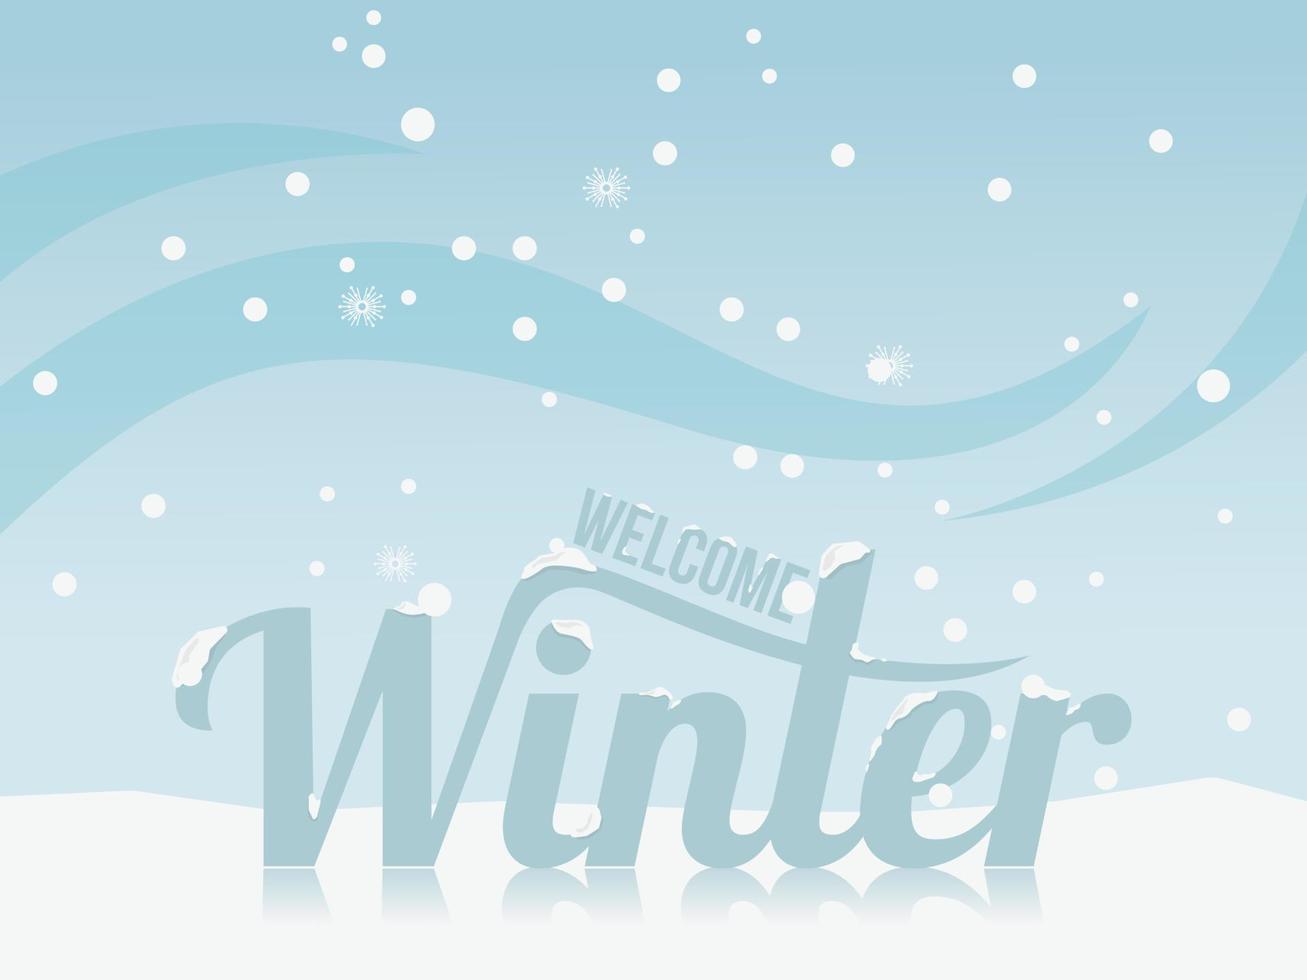 bem-vindo título de inverno na ilustração vetorial de fundo de neve vetor